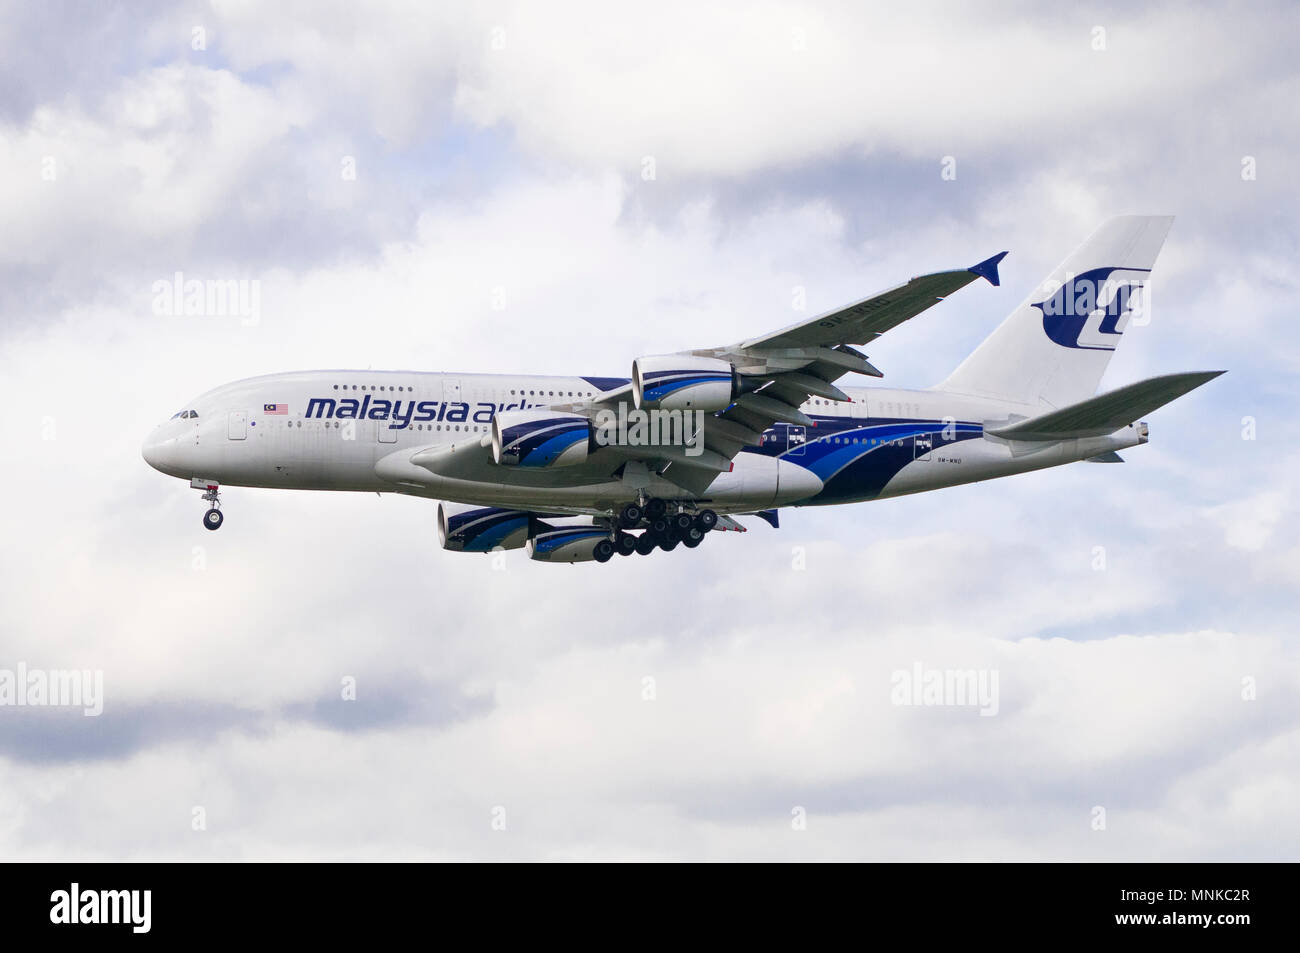 Londres, UK - 6 août 2013 - un A380-841 Malaysian Airlines atterrit à l'aéroport d'Heathrow à Londres Banque D'Images